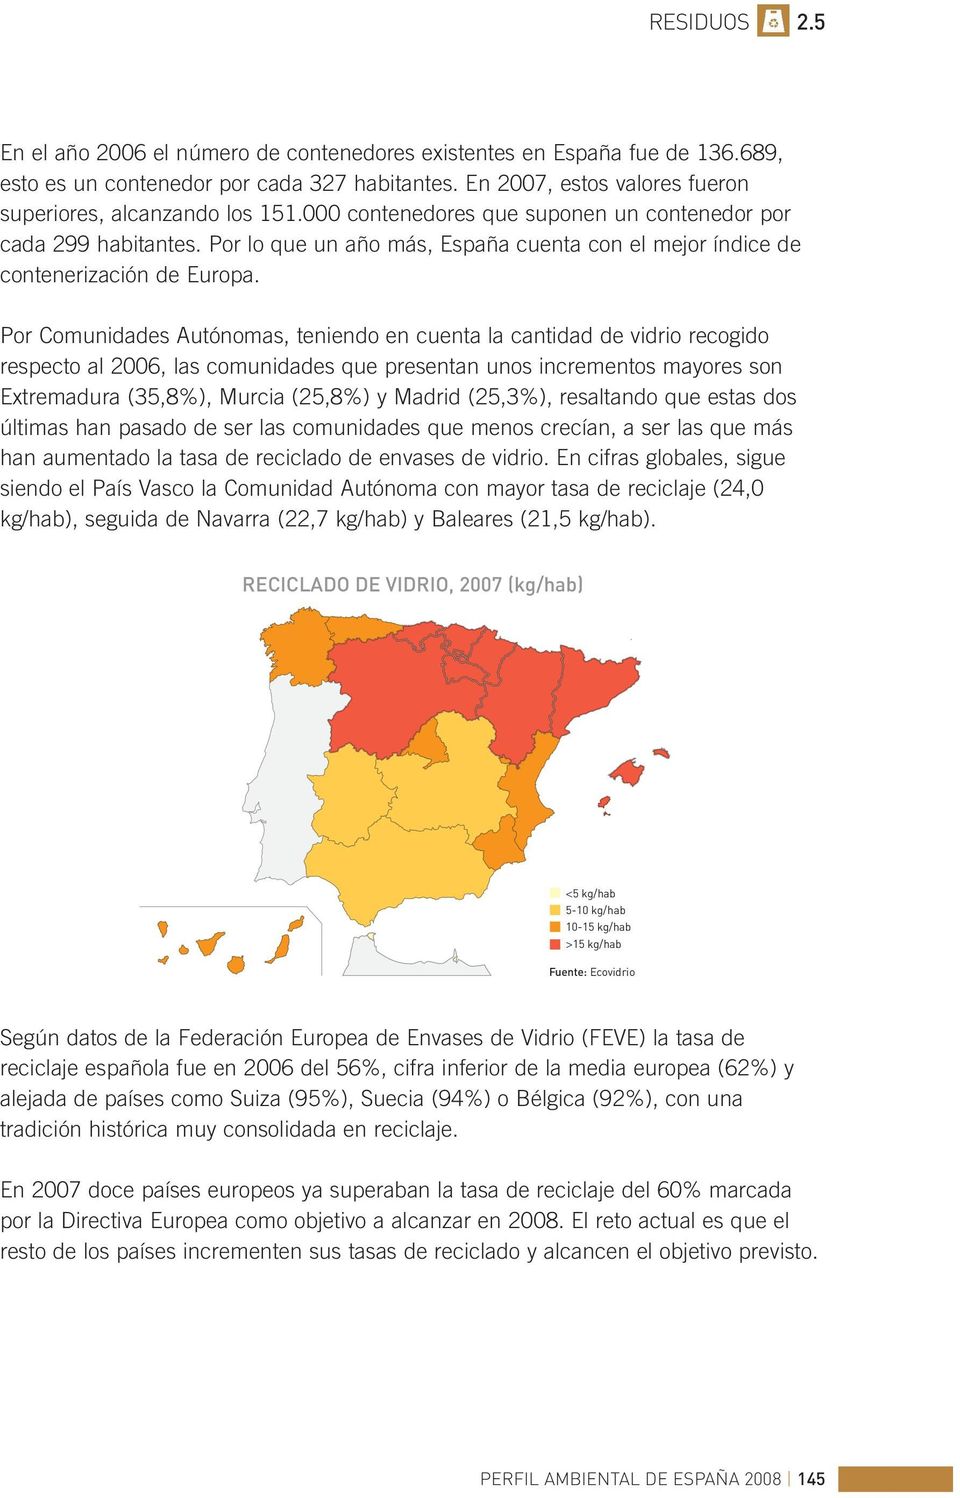 Por Comunidades Autónomas, teniendo en cuenta la cantidad de vidrio recogido respecto al 2006, las comunidades que presentan unos incrementos mayores son Extremadura (35,8%), Murcia (25,8%) y Madrid